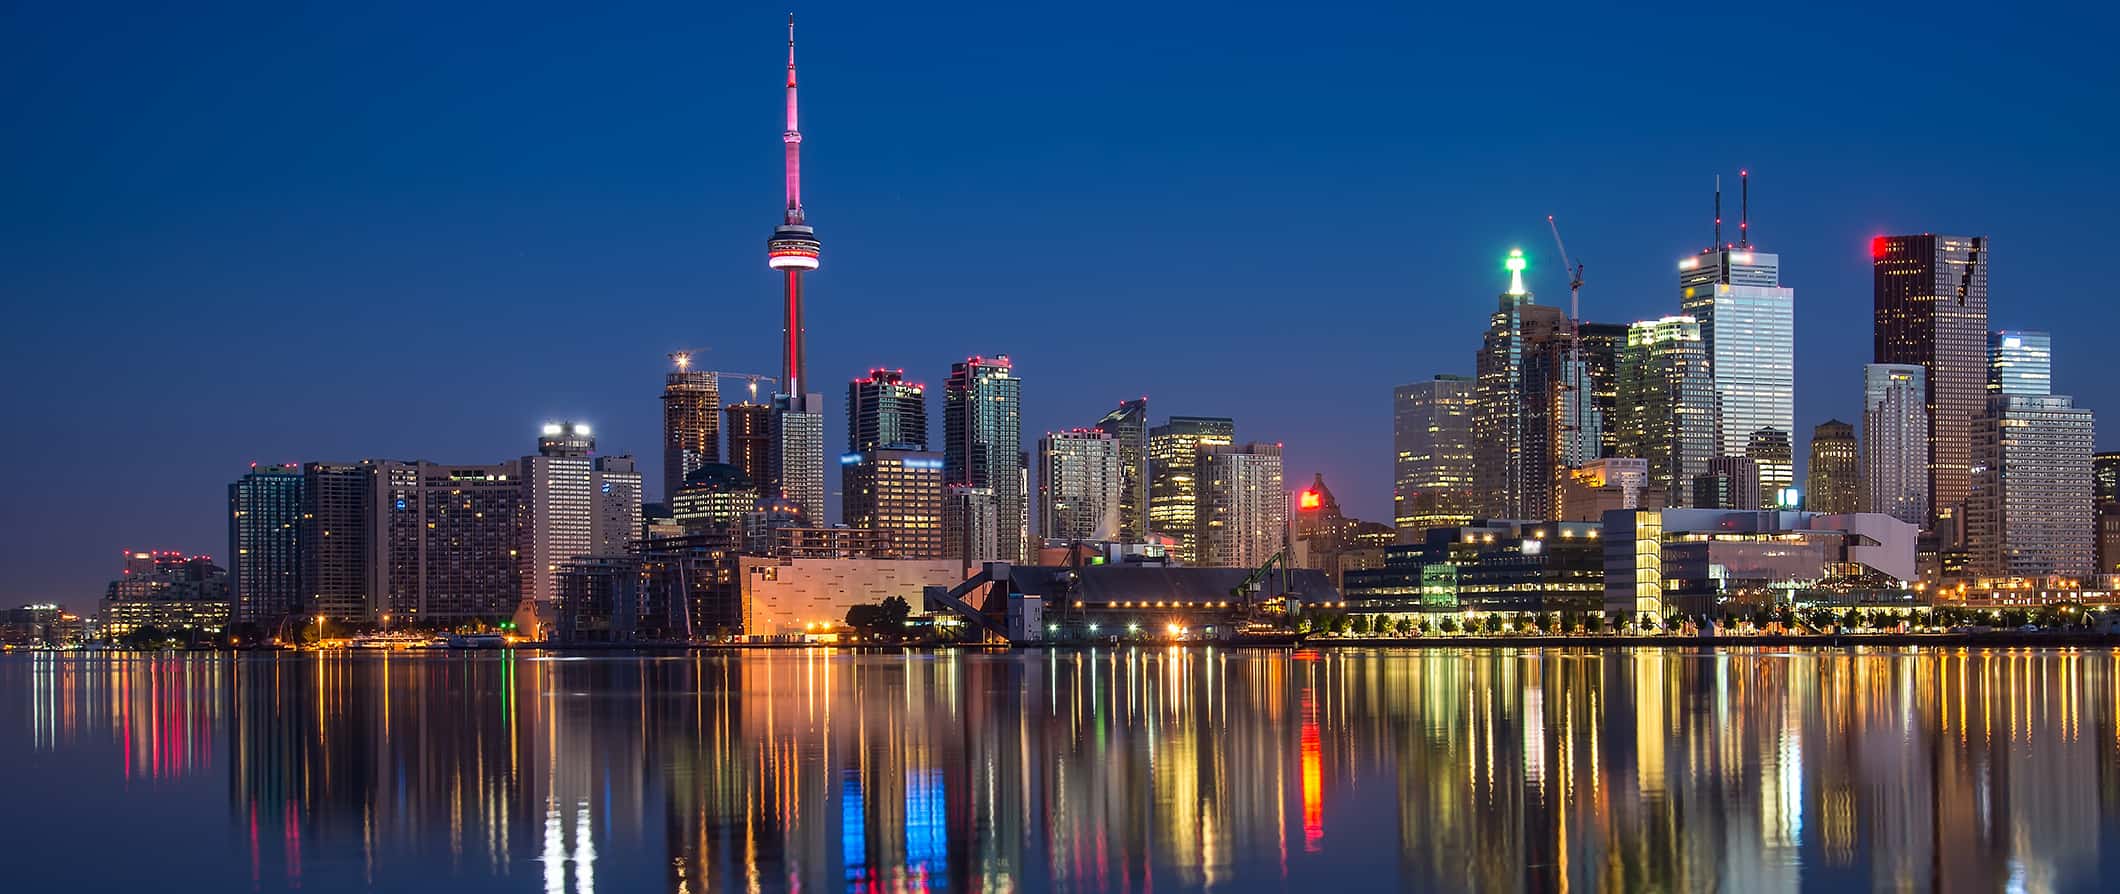 O horizonte noturno de Toronto, Canadá, refletiu nas águas calmas do lago Ontário.